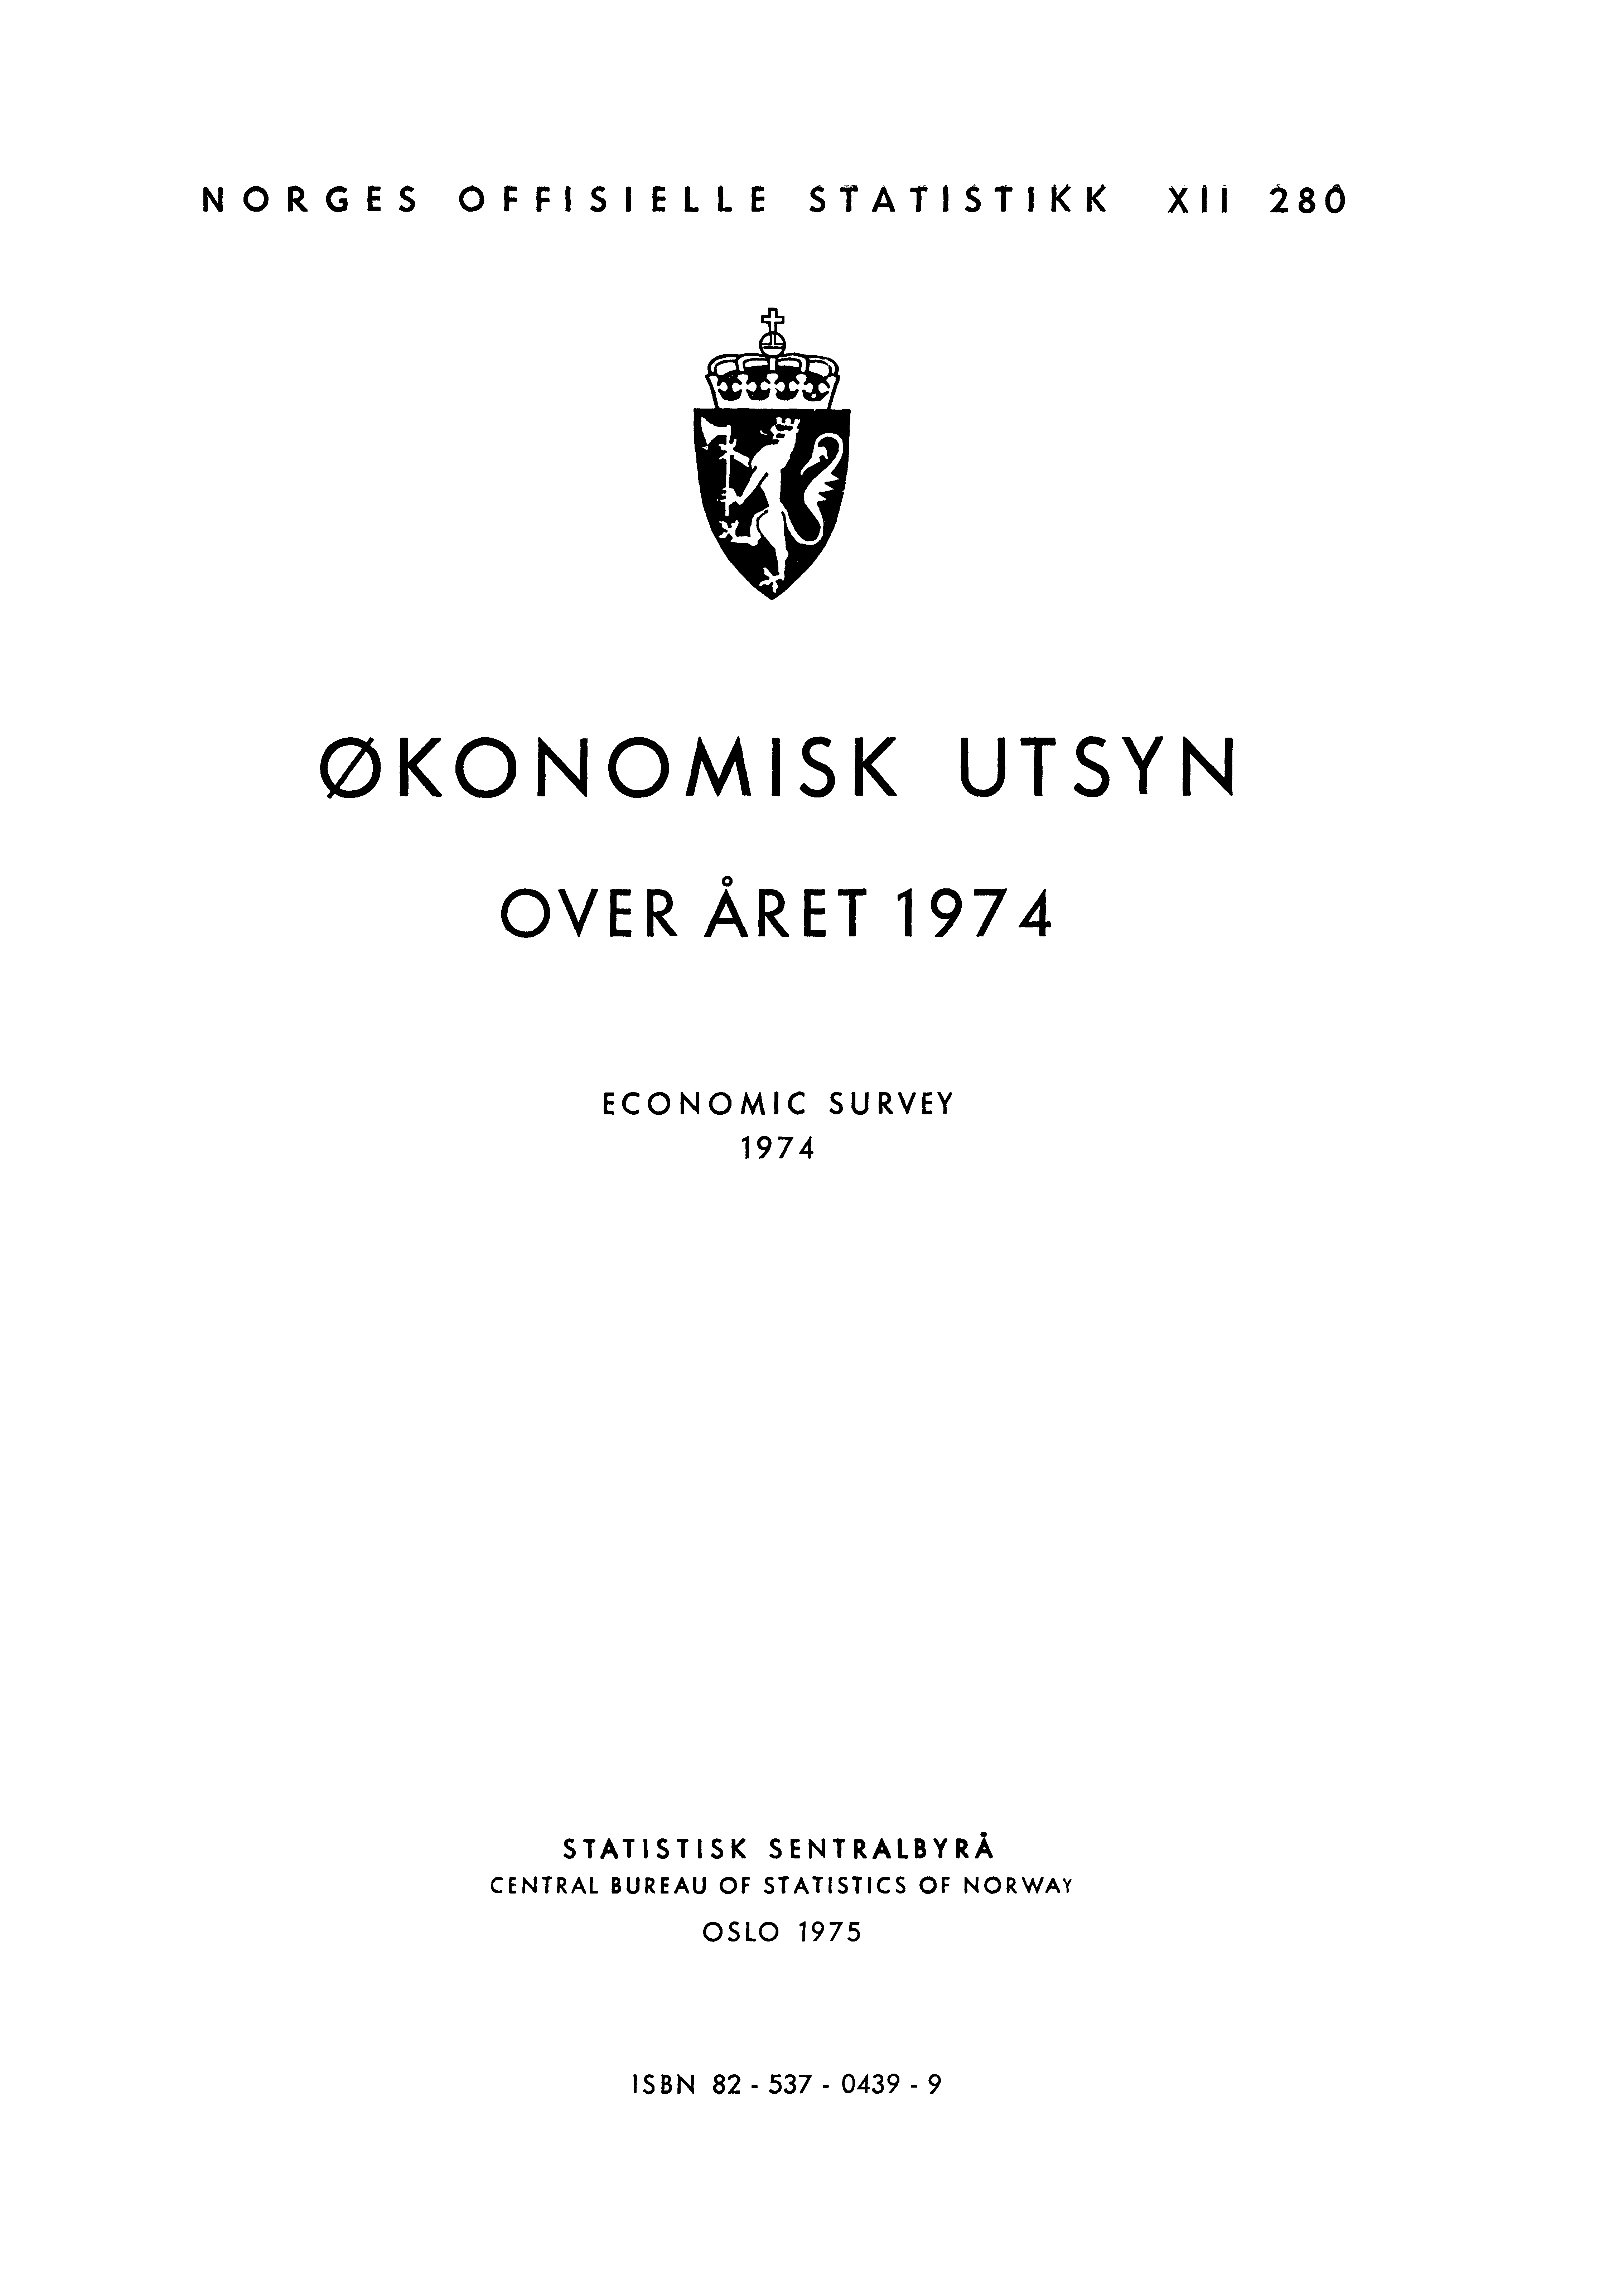 NORGES OFFISIELLE STATISTIKK XII 280 ØKONOMISK UTSYN OVER ÅRET 1974 ECONOMIC SURVEY 1974